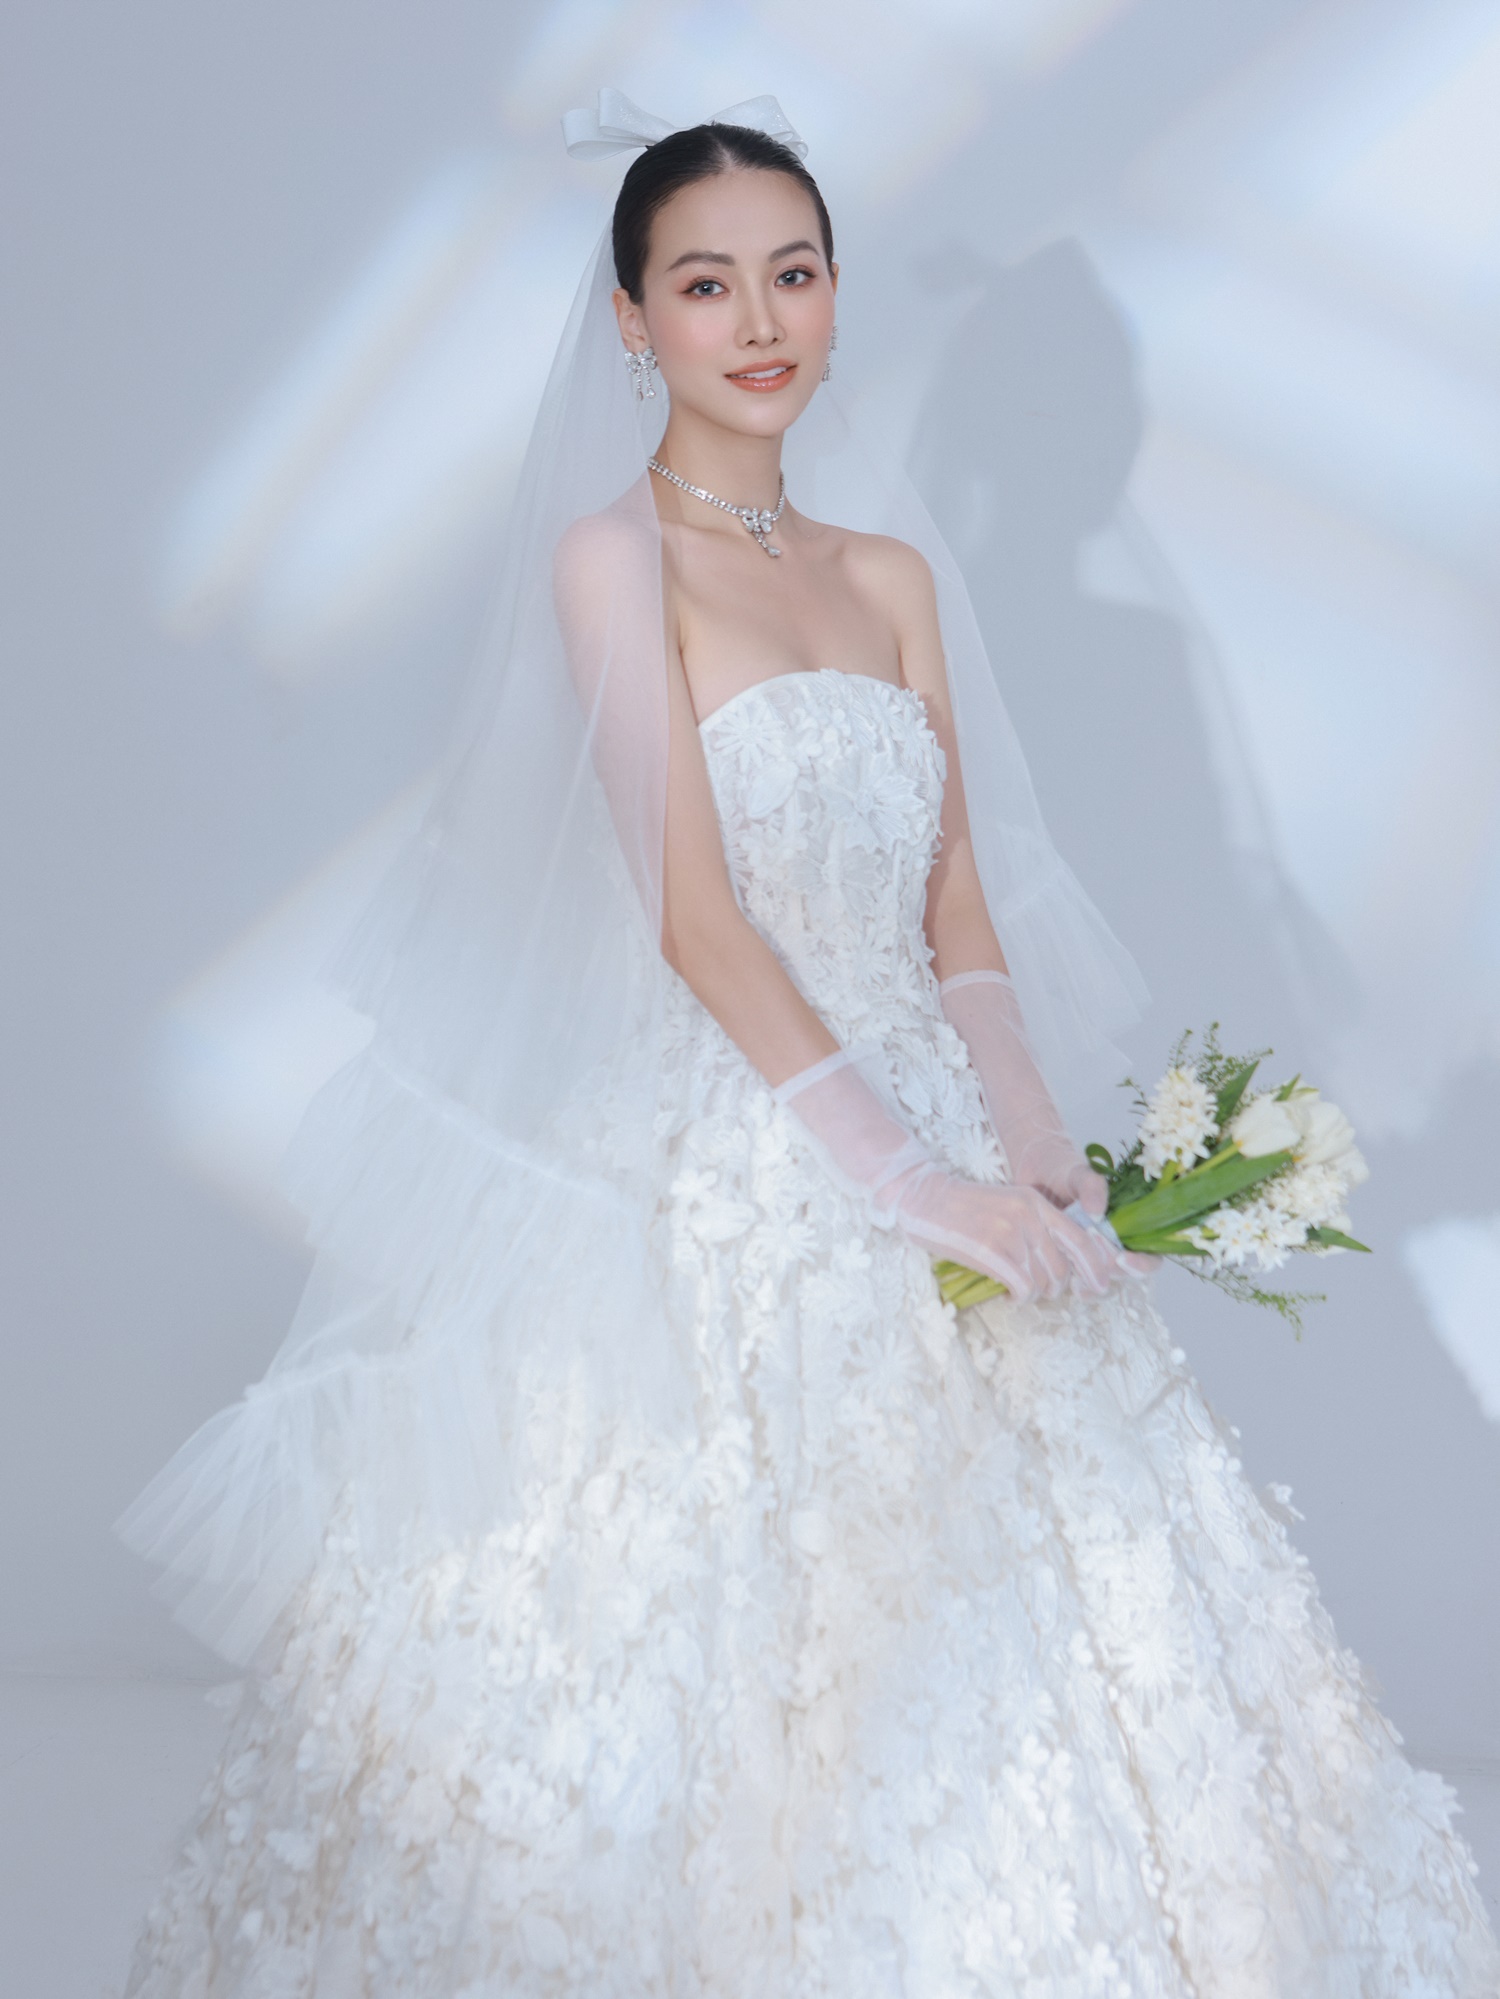 Với nàng thơ Phương Khánh, NTK Nguyễn Minh Công đã thành công truyền tải hình ảnh cô gái hạnh phúc, ngây thơ và đầy xinh đẹp trong chiếc váy cưới nhân ngày trọng đại